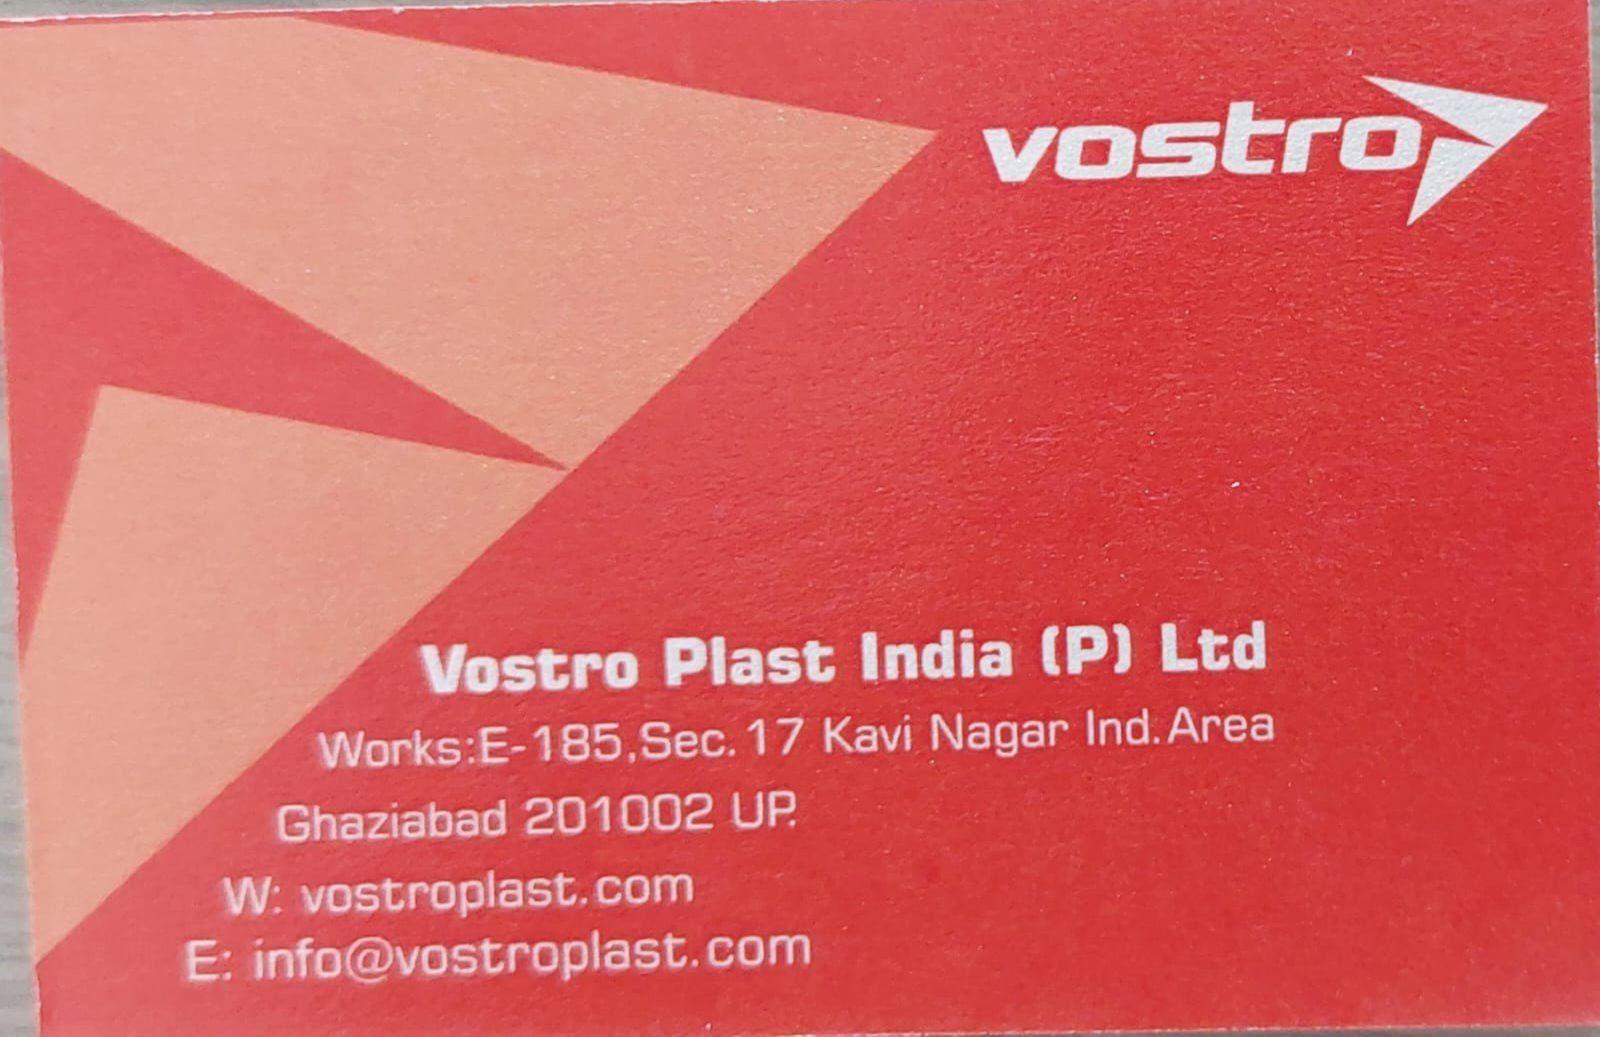 Vostro Plast India Pvt. Ltd.